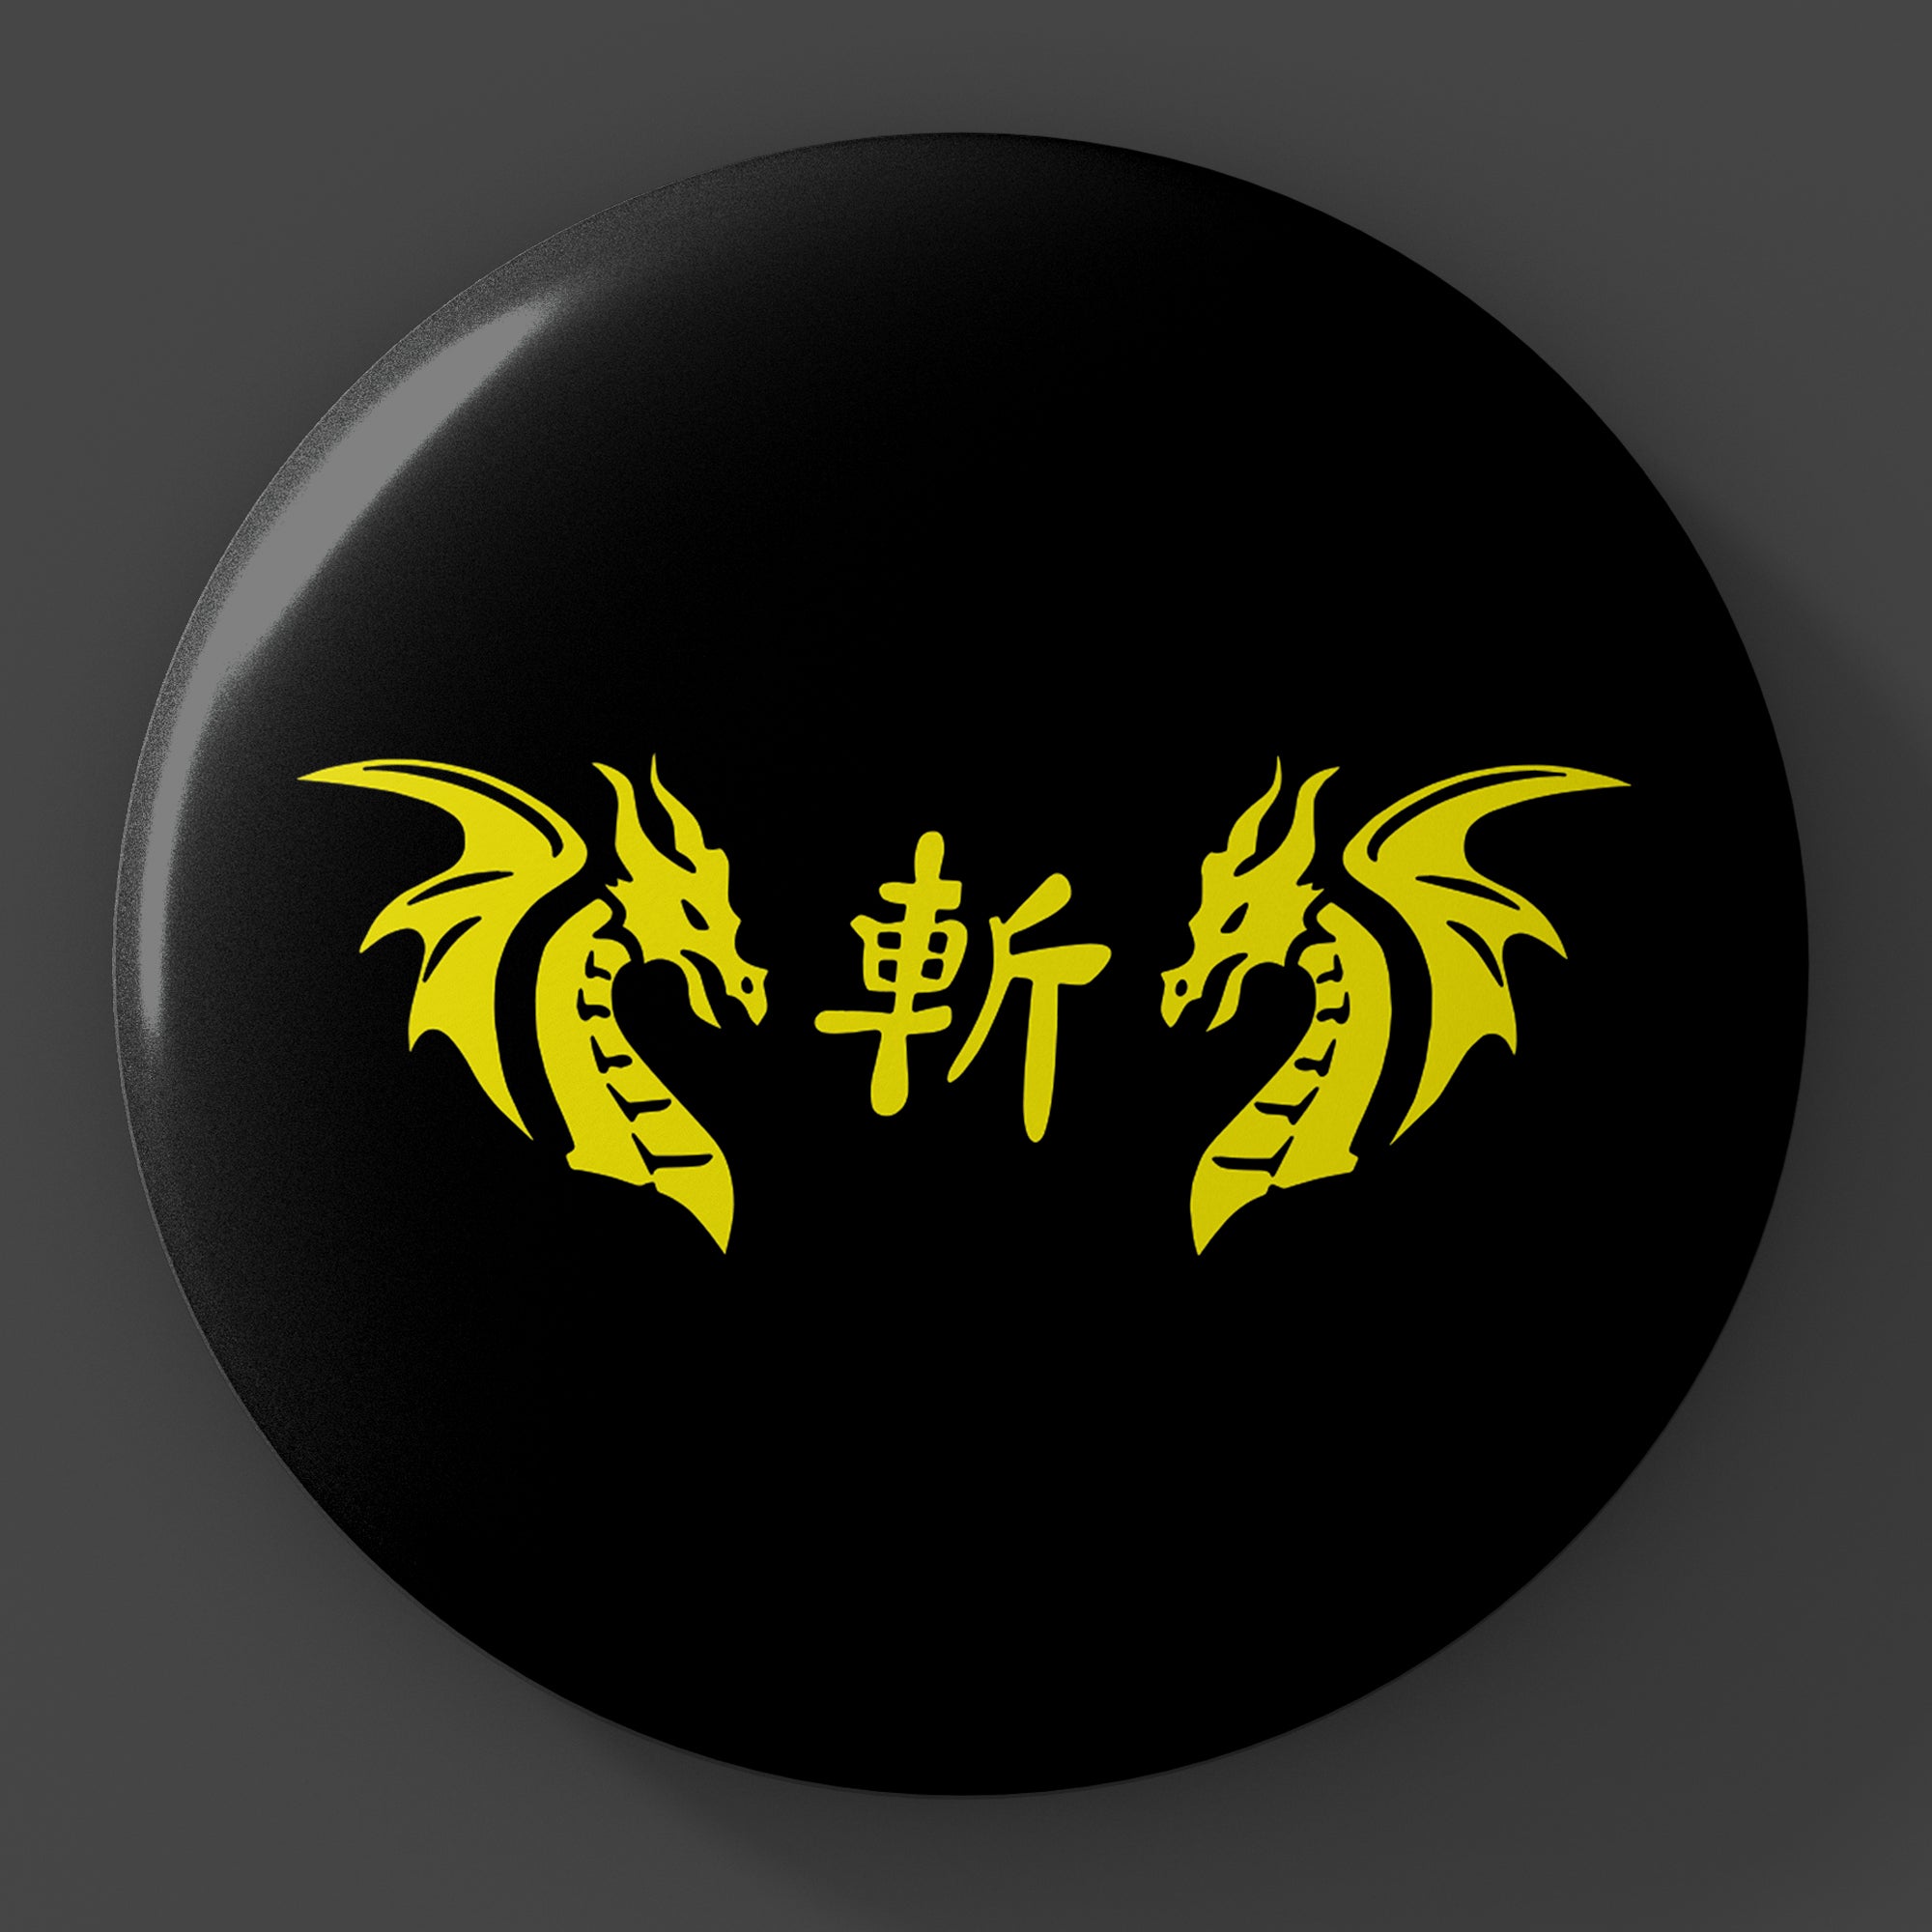 Ninja Brian logo 3-Inch Button